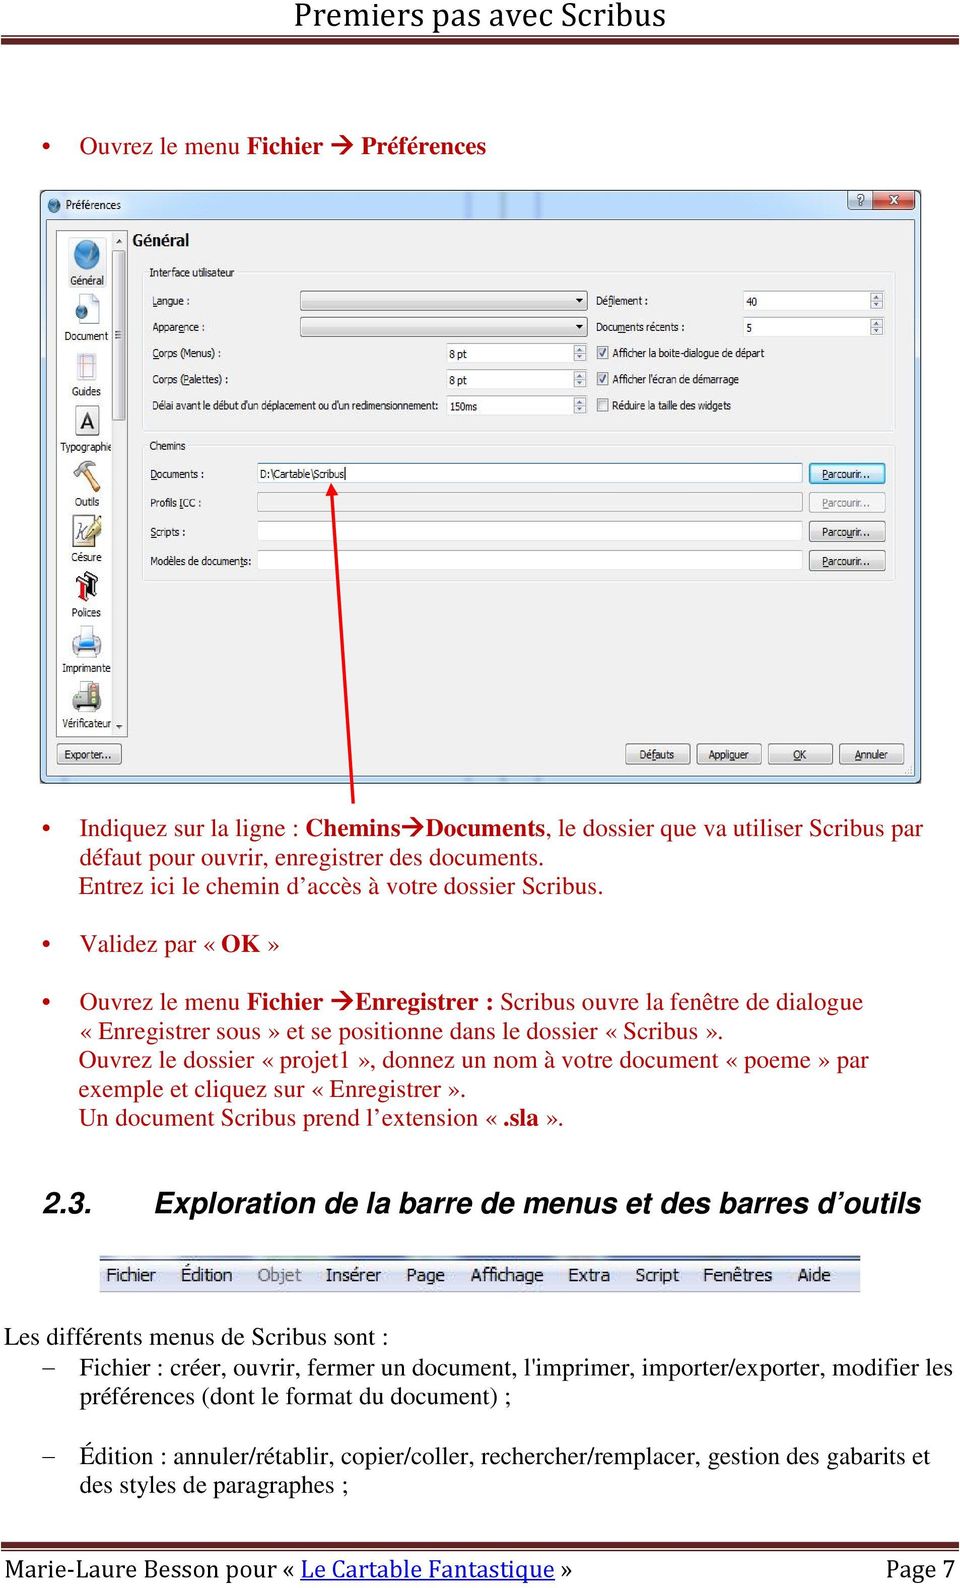 Validez par «OK» Ouvrez le menu Fichier Enregistrer : Scribus ouvre la fenêtre de dialogue «Enregistrer sous» et se positionne dans le dossier «Scribus».